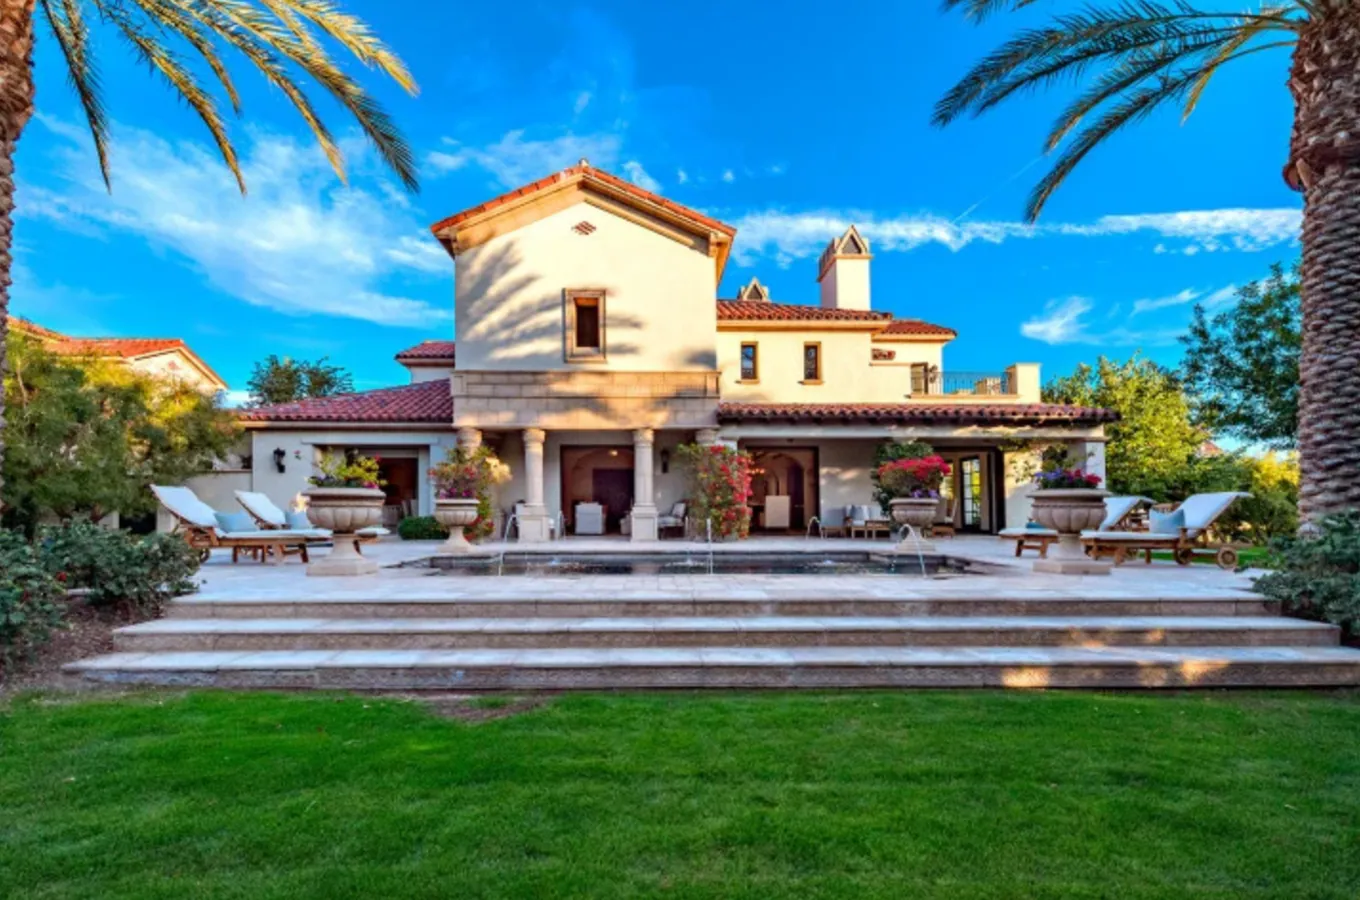 Sylvester Stallone malvende su mansión de lujo de La Quinta por 3 millones de euros